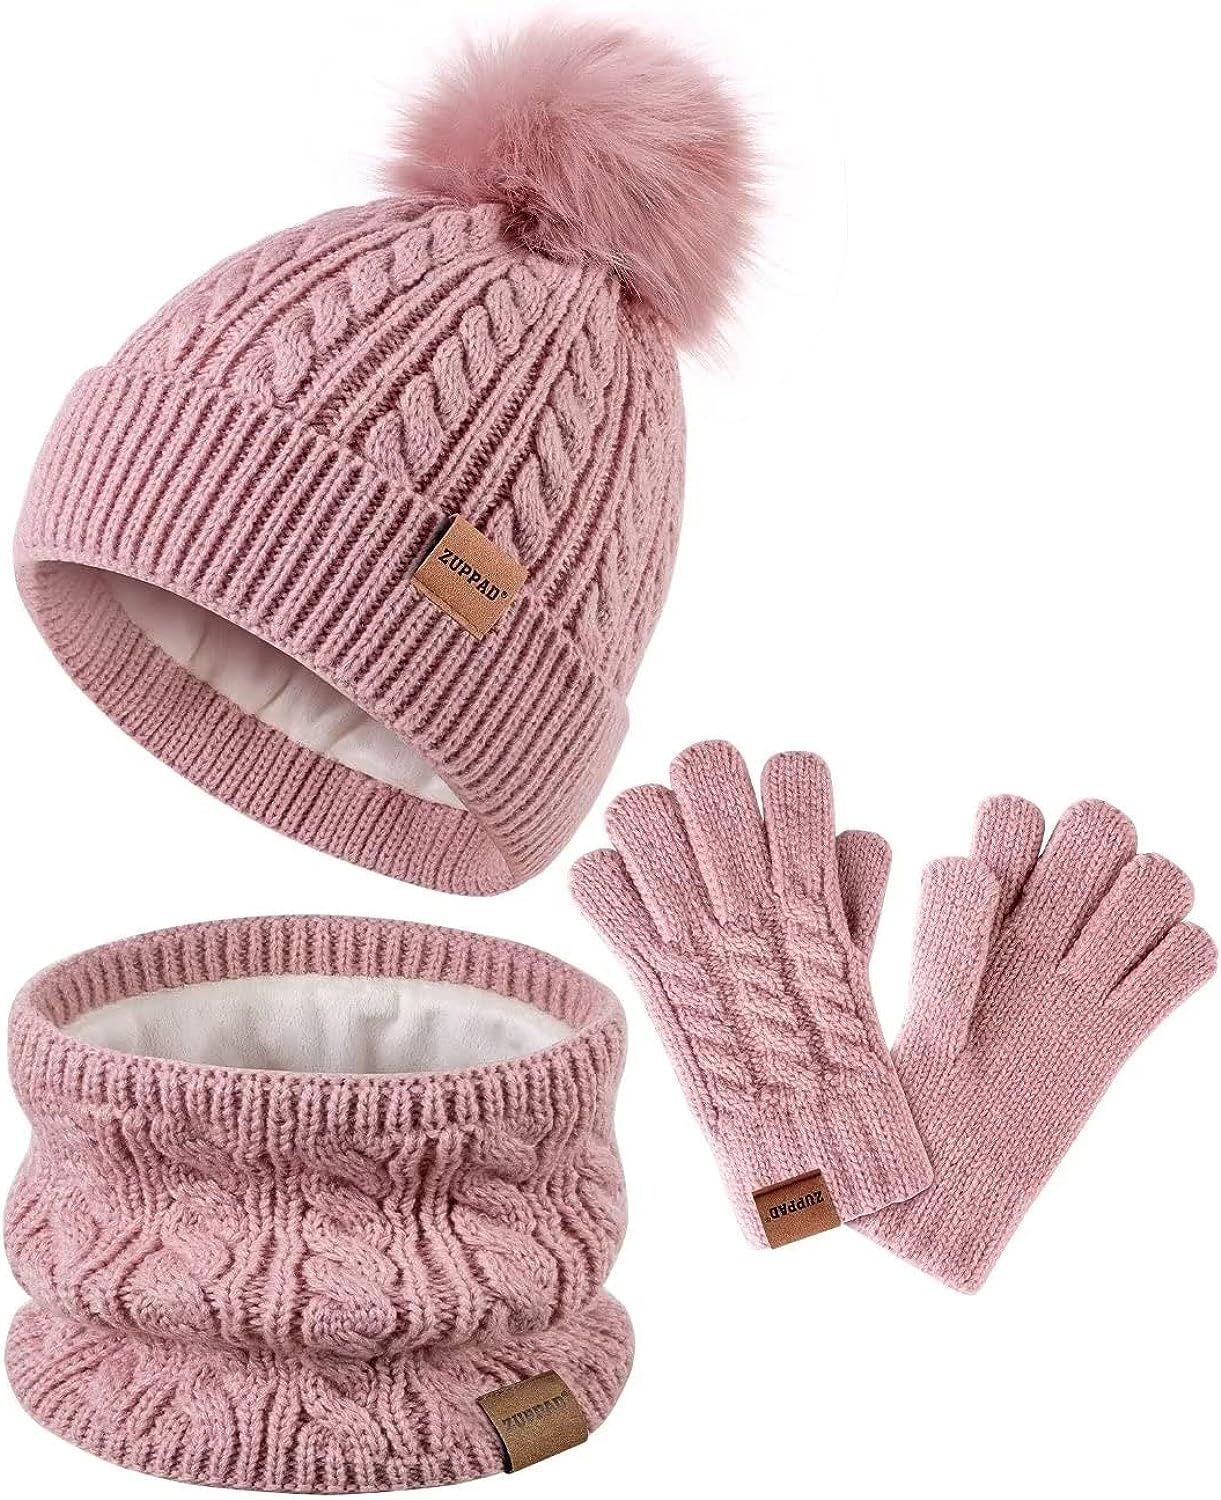 Kids Winter Hat Gloves Scarf Set,Girls Toddler Children Hats Beanie with Pom Knit Neck Warmer Gai... | Amazon (US)